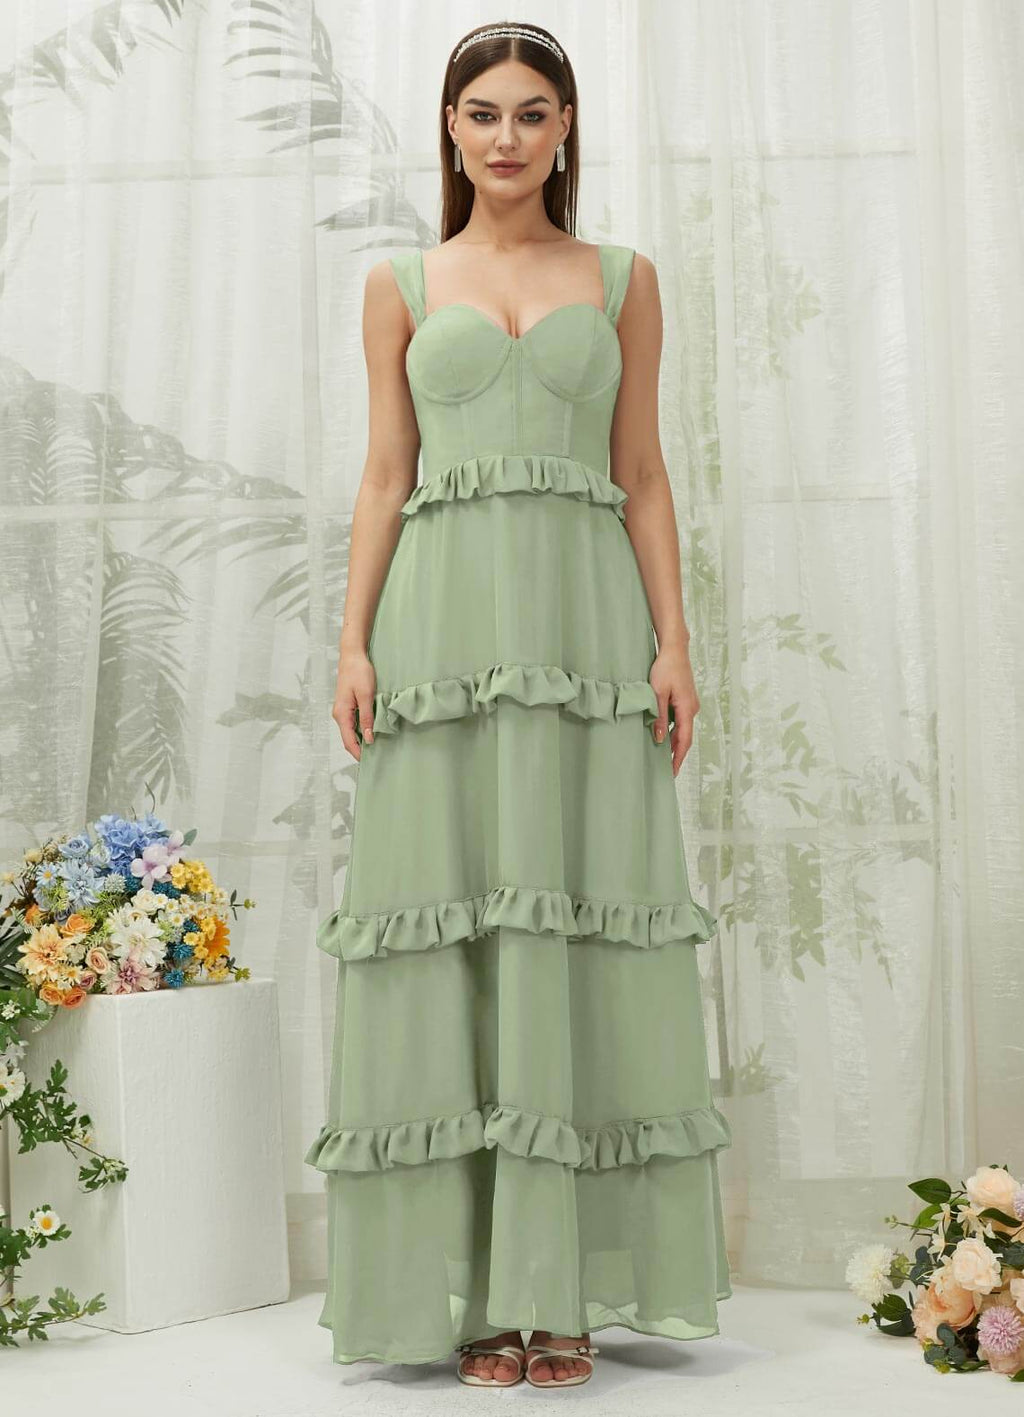 NZ Bridal Sage Green Sweetheart Chiffon Maxi Bridesmaid Dress With Pocket R3701 Sloane a